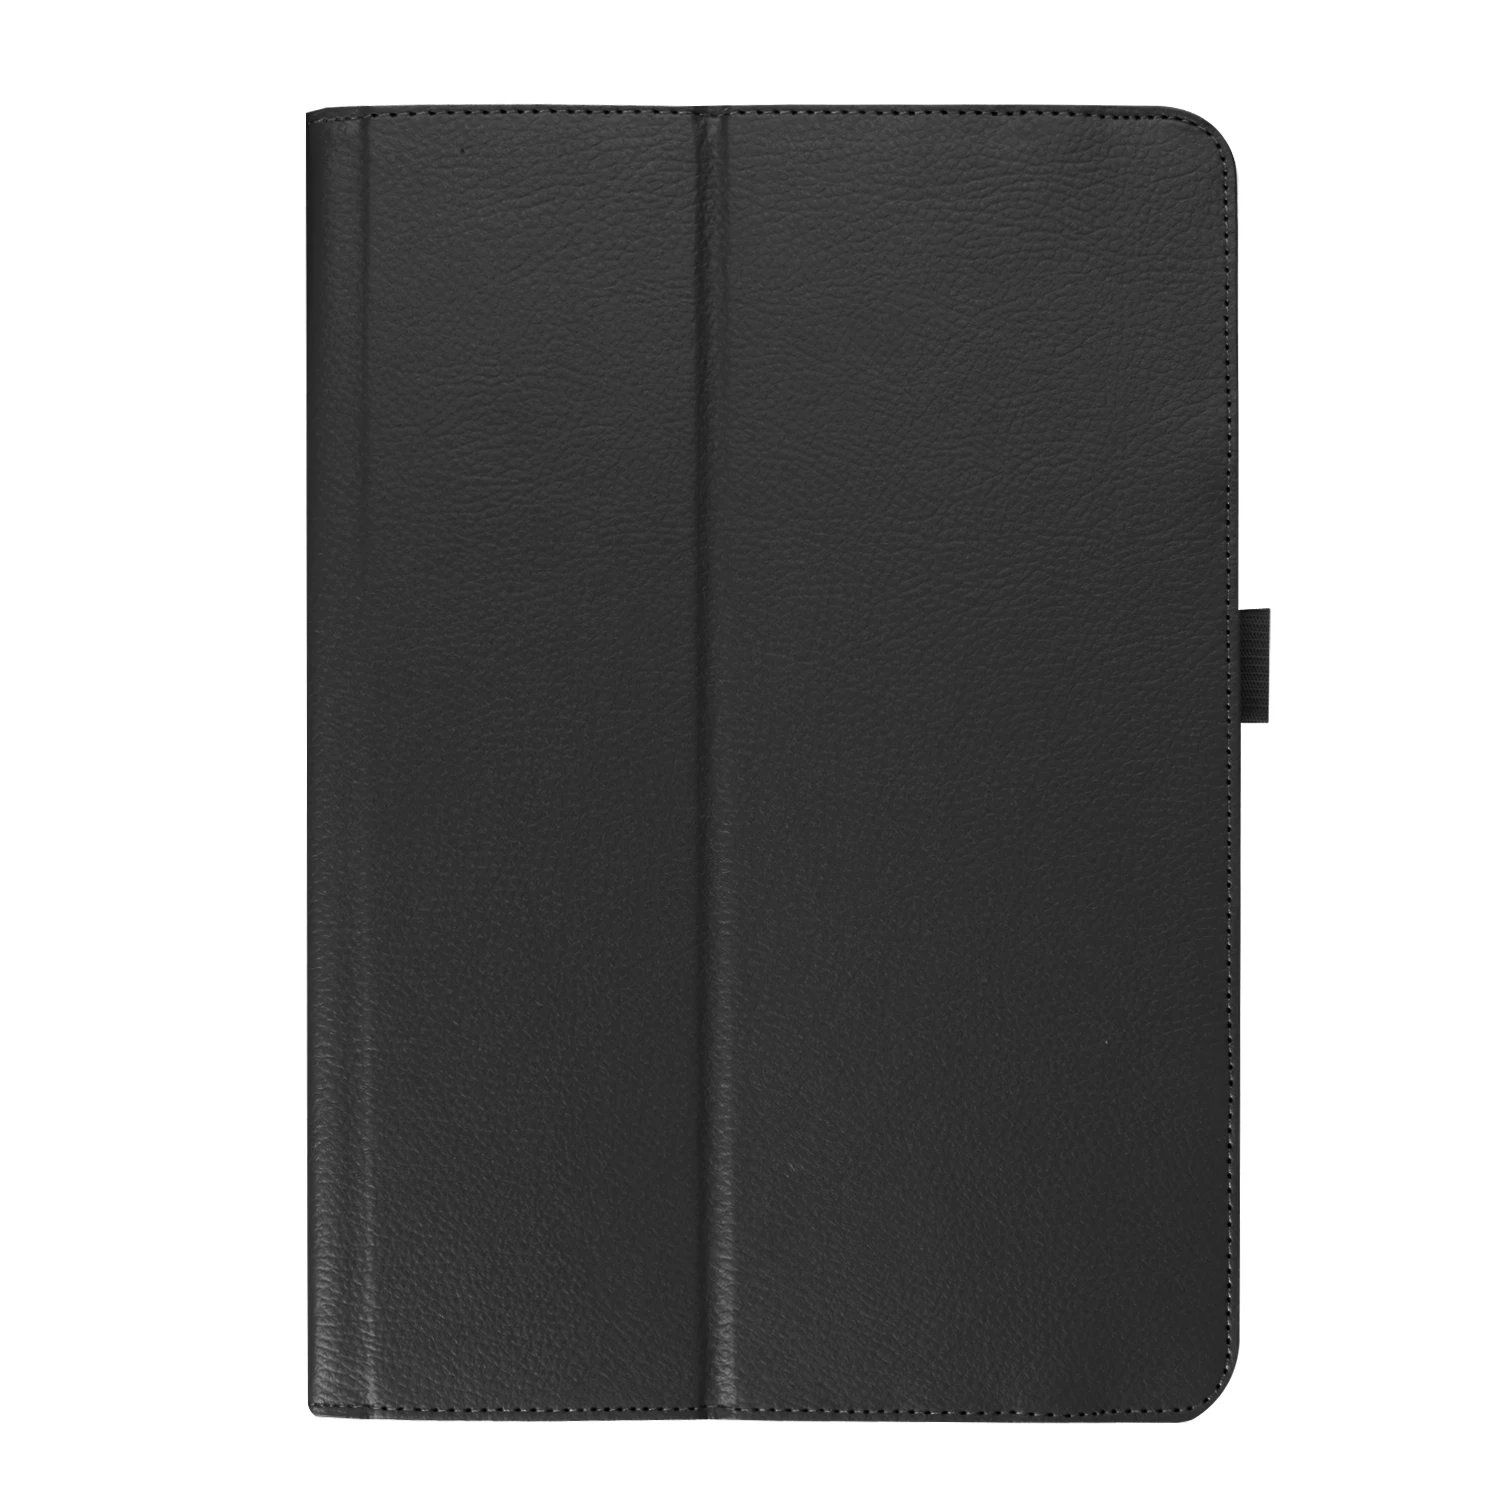 Для Asus memo pad FHD 10 ME301T ME302 ME302C ME302KL 10,1 дюймов планшет pu кожаный чехол+ Защитная пленка+ стилус - Цвет: black